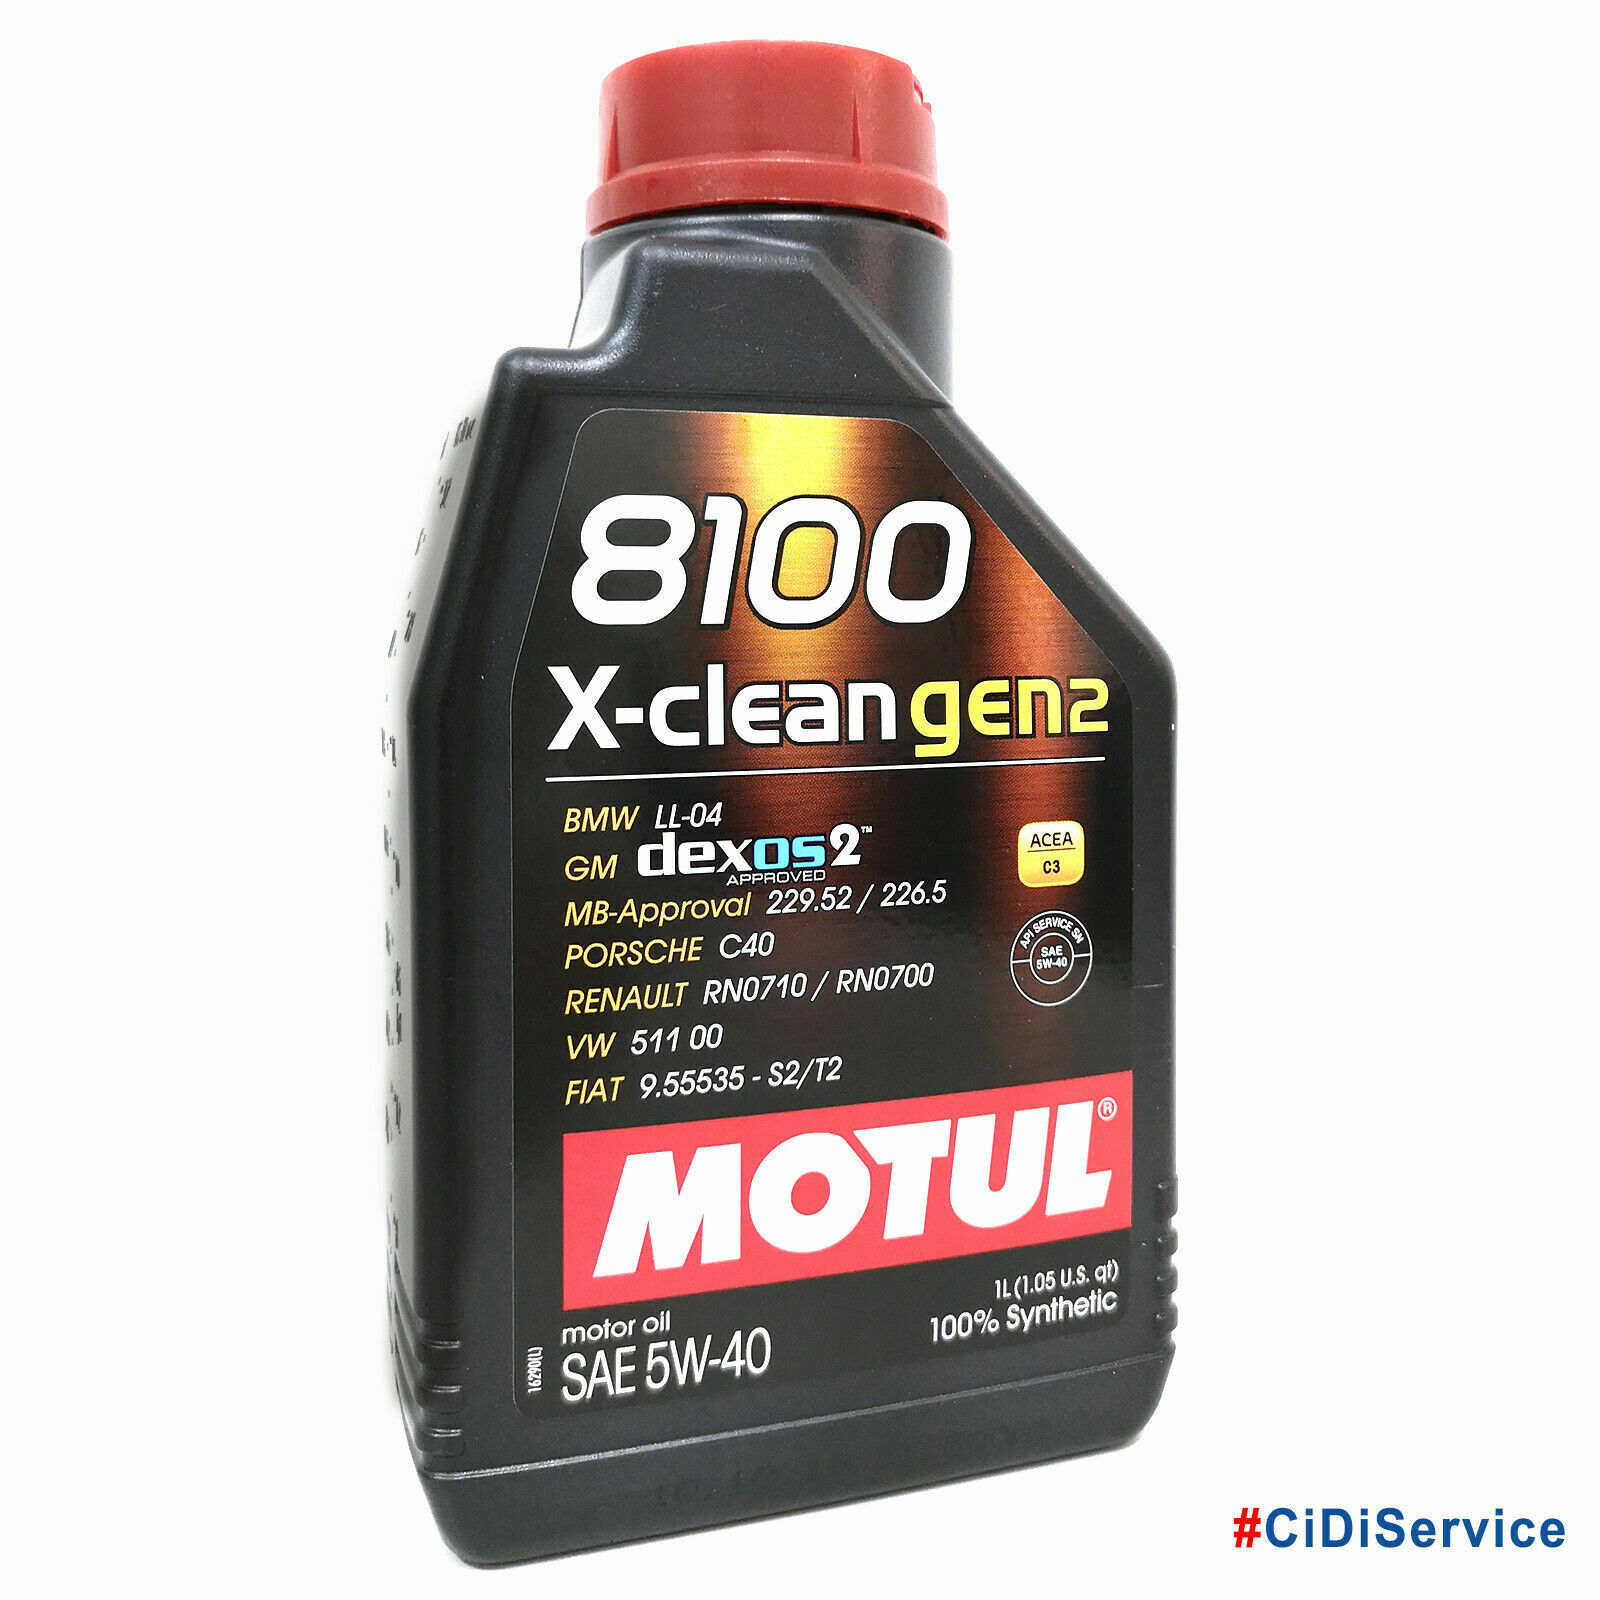 MOTUL 8100 X-CLEAN GEN2 DEXOS 2 5W40